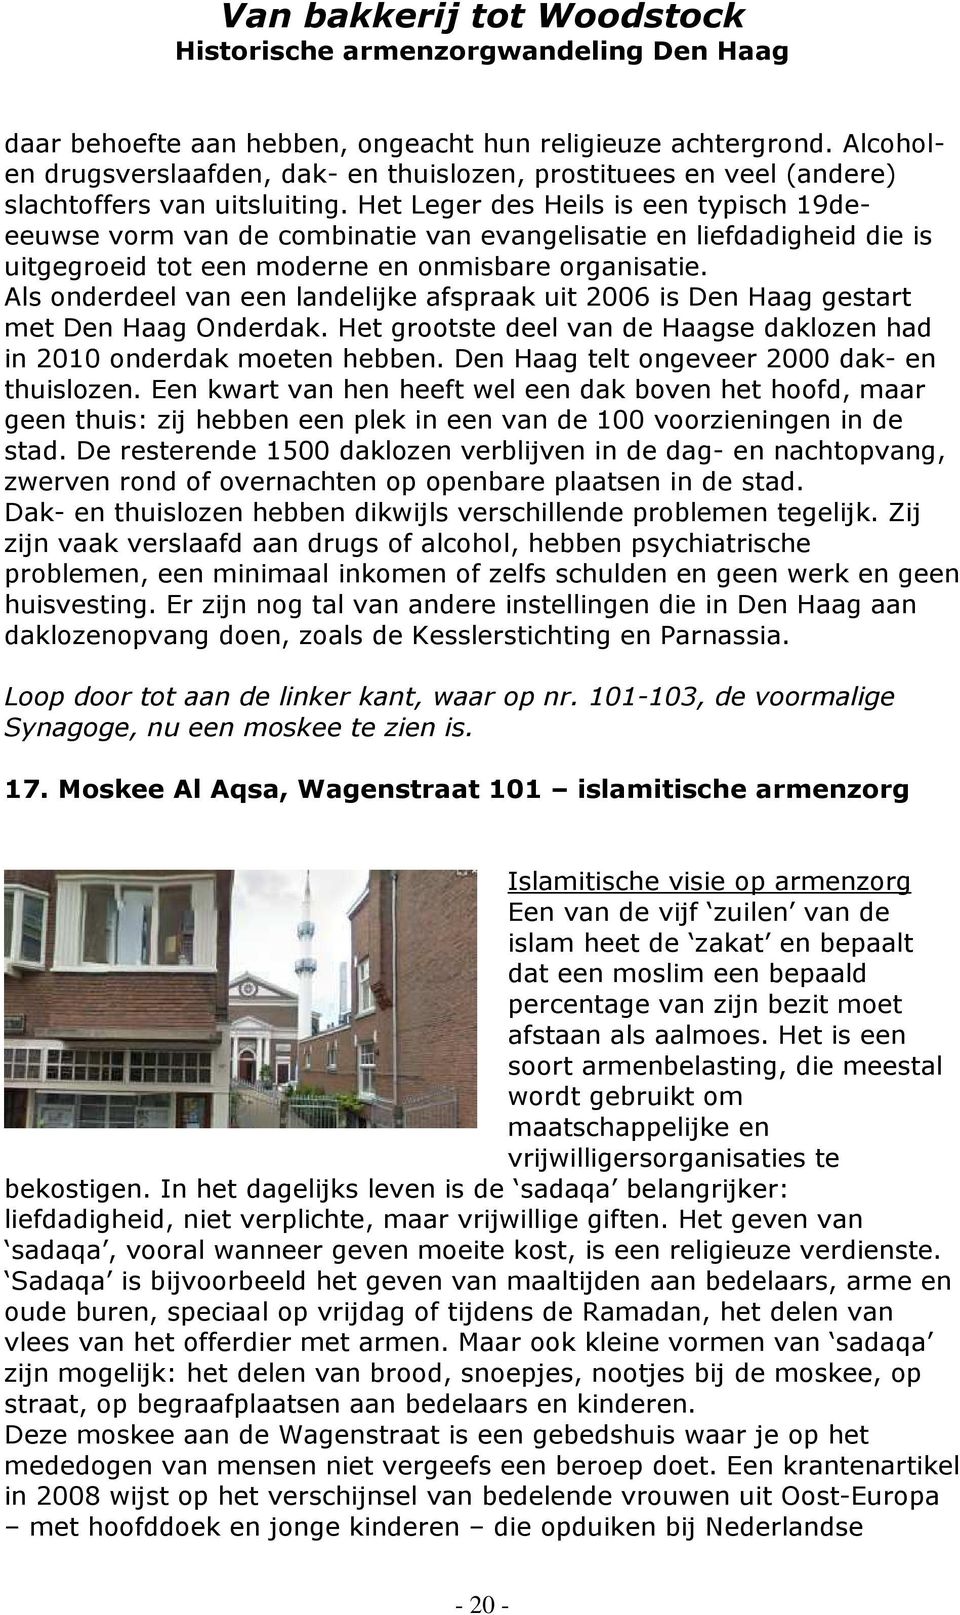 Als onderdeel van een landelijke afspraak uit 2006 is Den Haag gestart met Den Haag Onderdak. Het grootste deel van de Haagse daklozen had in 2010 onderdak moeten hebben.